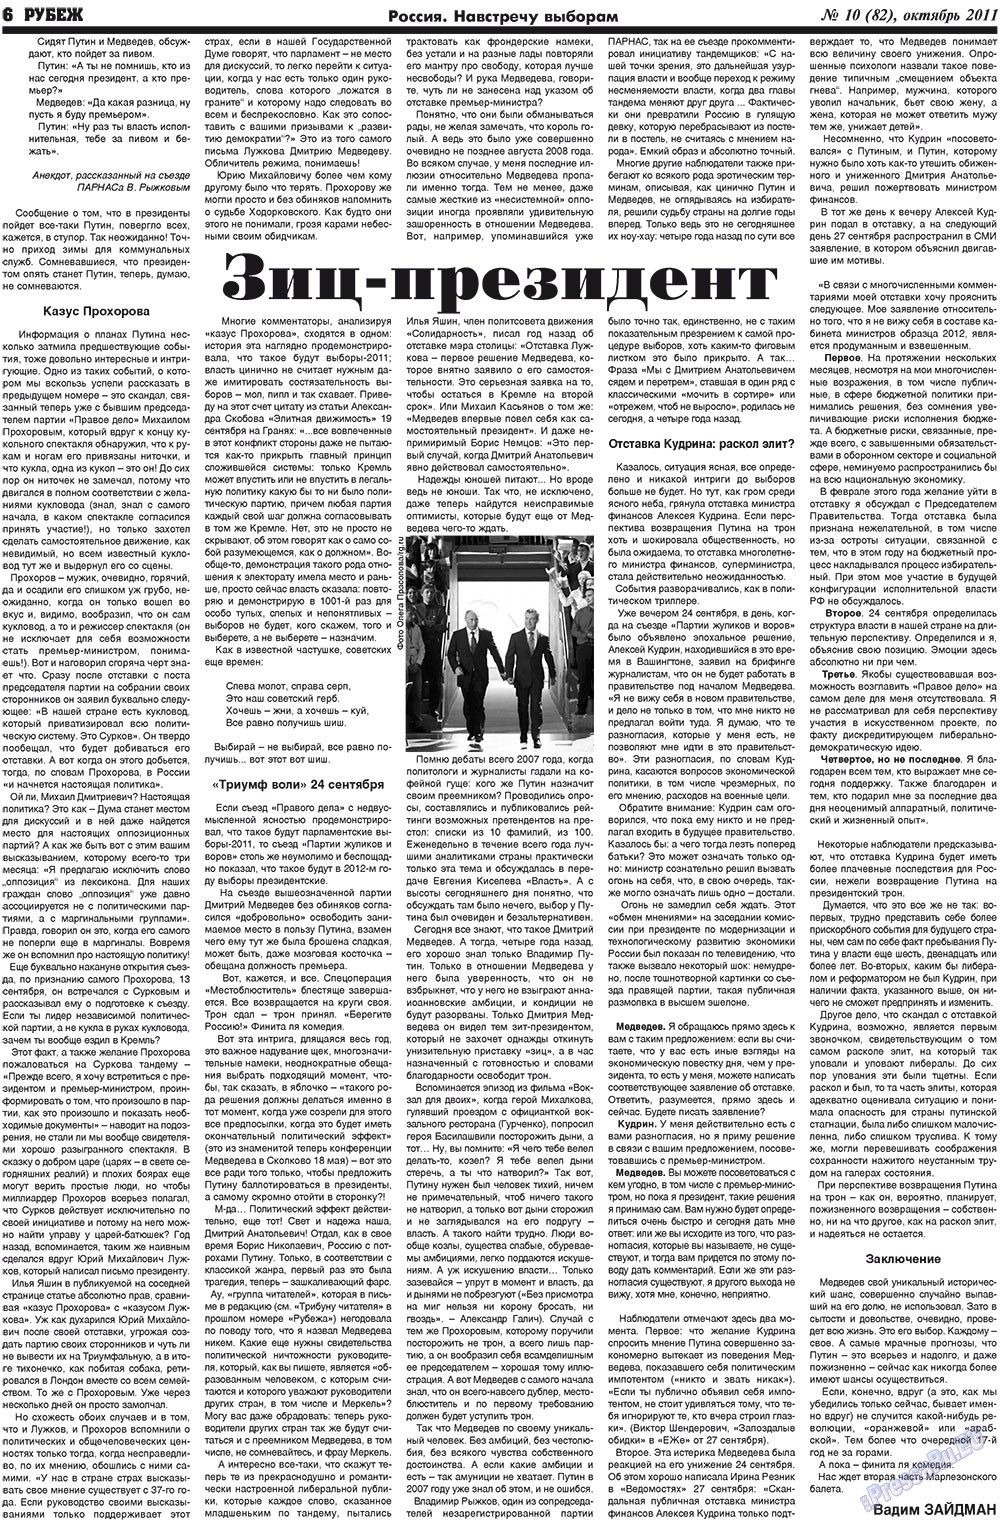 Рубеж (газета). 2011 год, номер 10, стр. 6